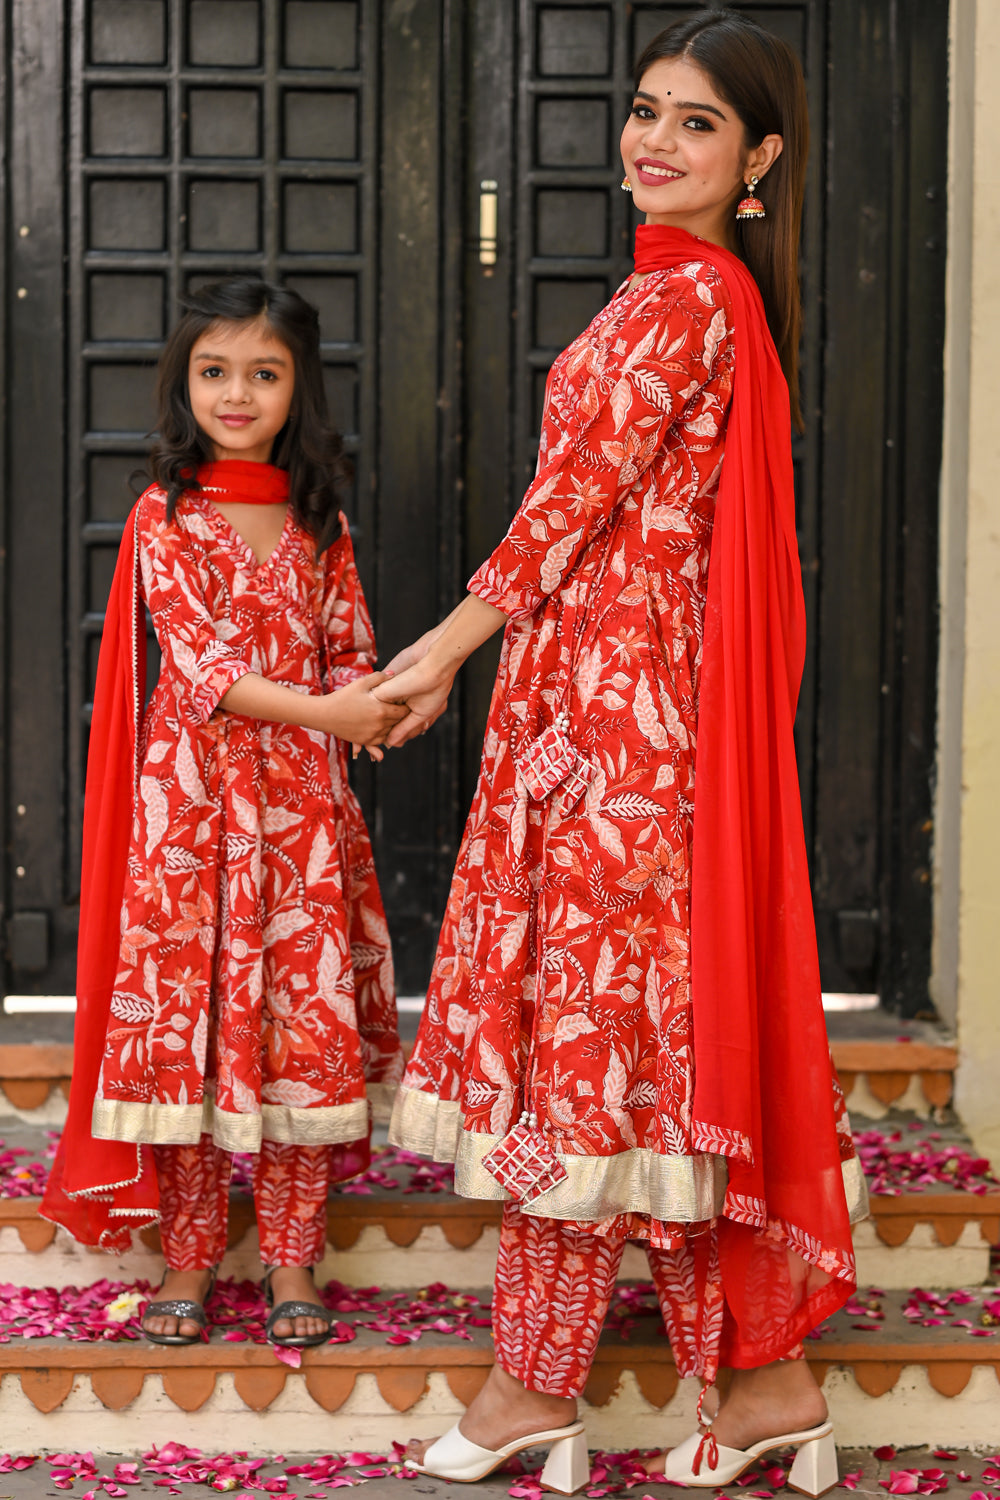 Buy Pink Cotton Kids Girl Salwar Suit Online at Best Price | Cbazaar